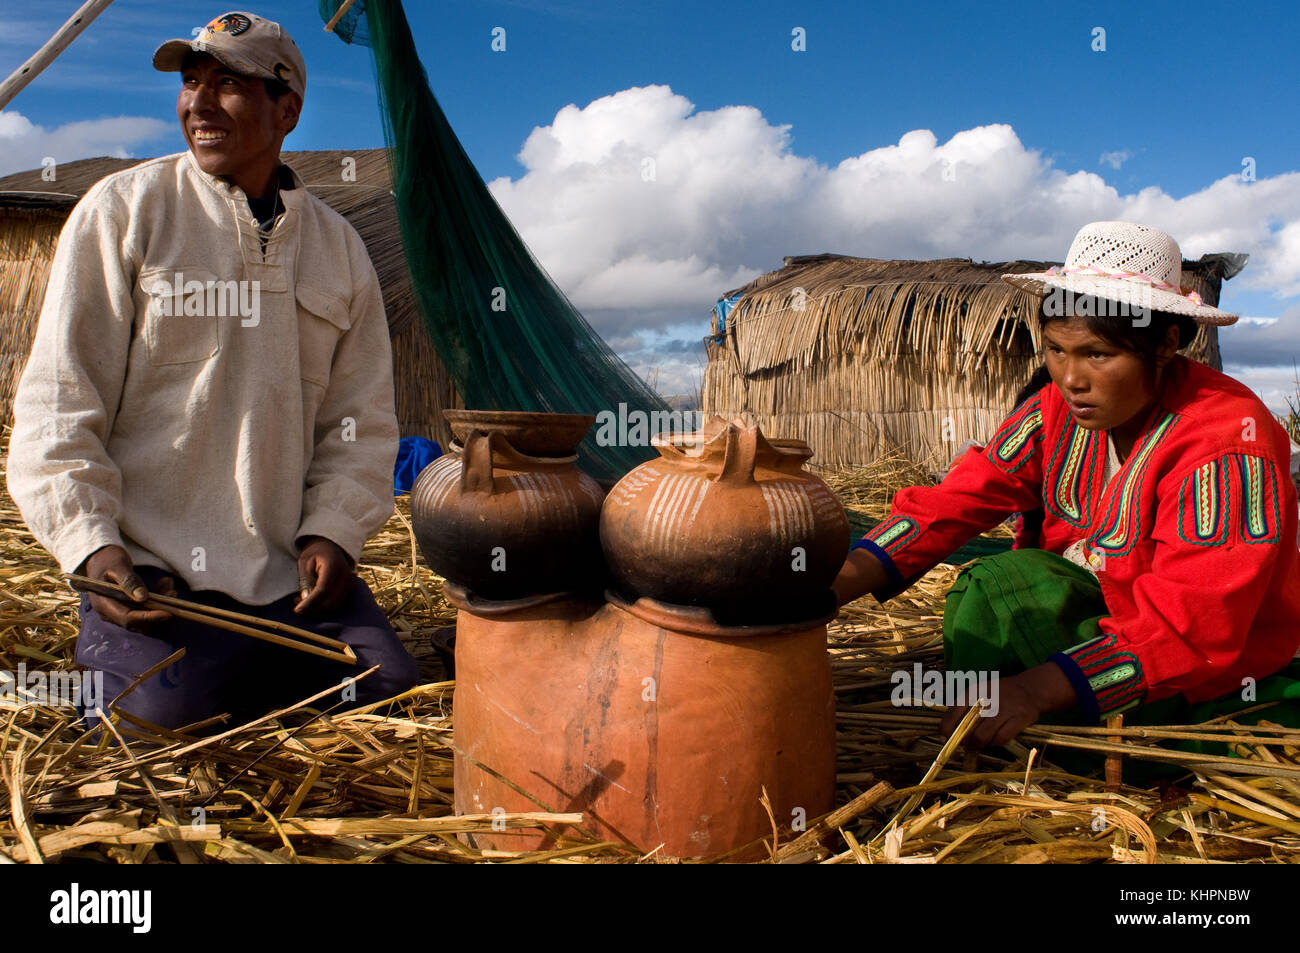 L'île uros, le lac Titicaca, au Pérou, en Amérique du Sud. une famille prépare le petit-déjeuner sur l'île de los Uros situé à l'intérieur du lac Titicaca. Banque D'Images